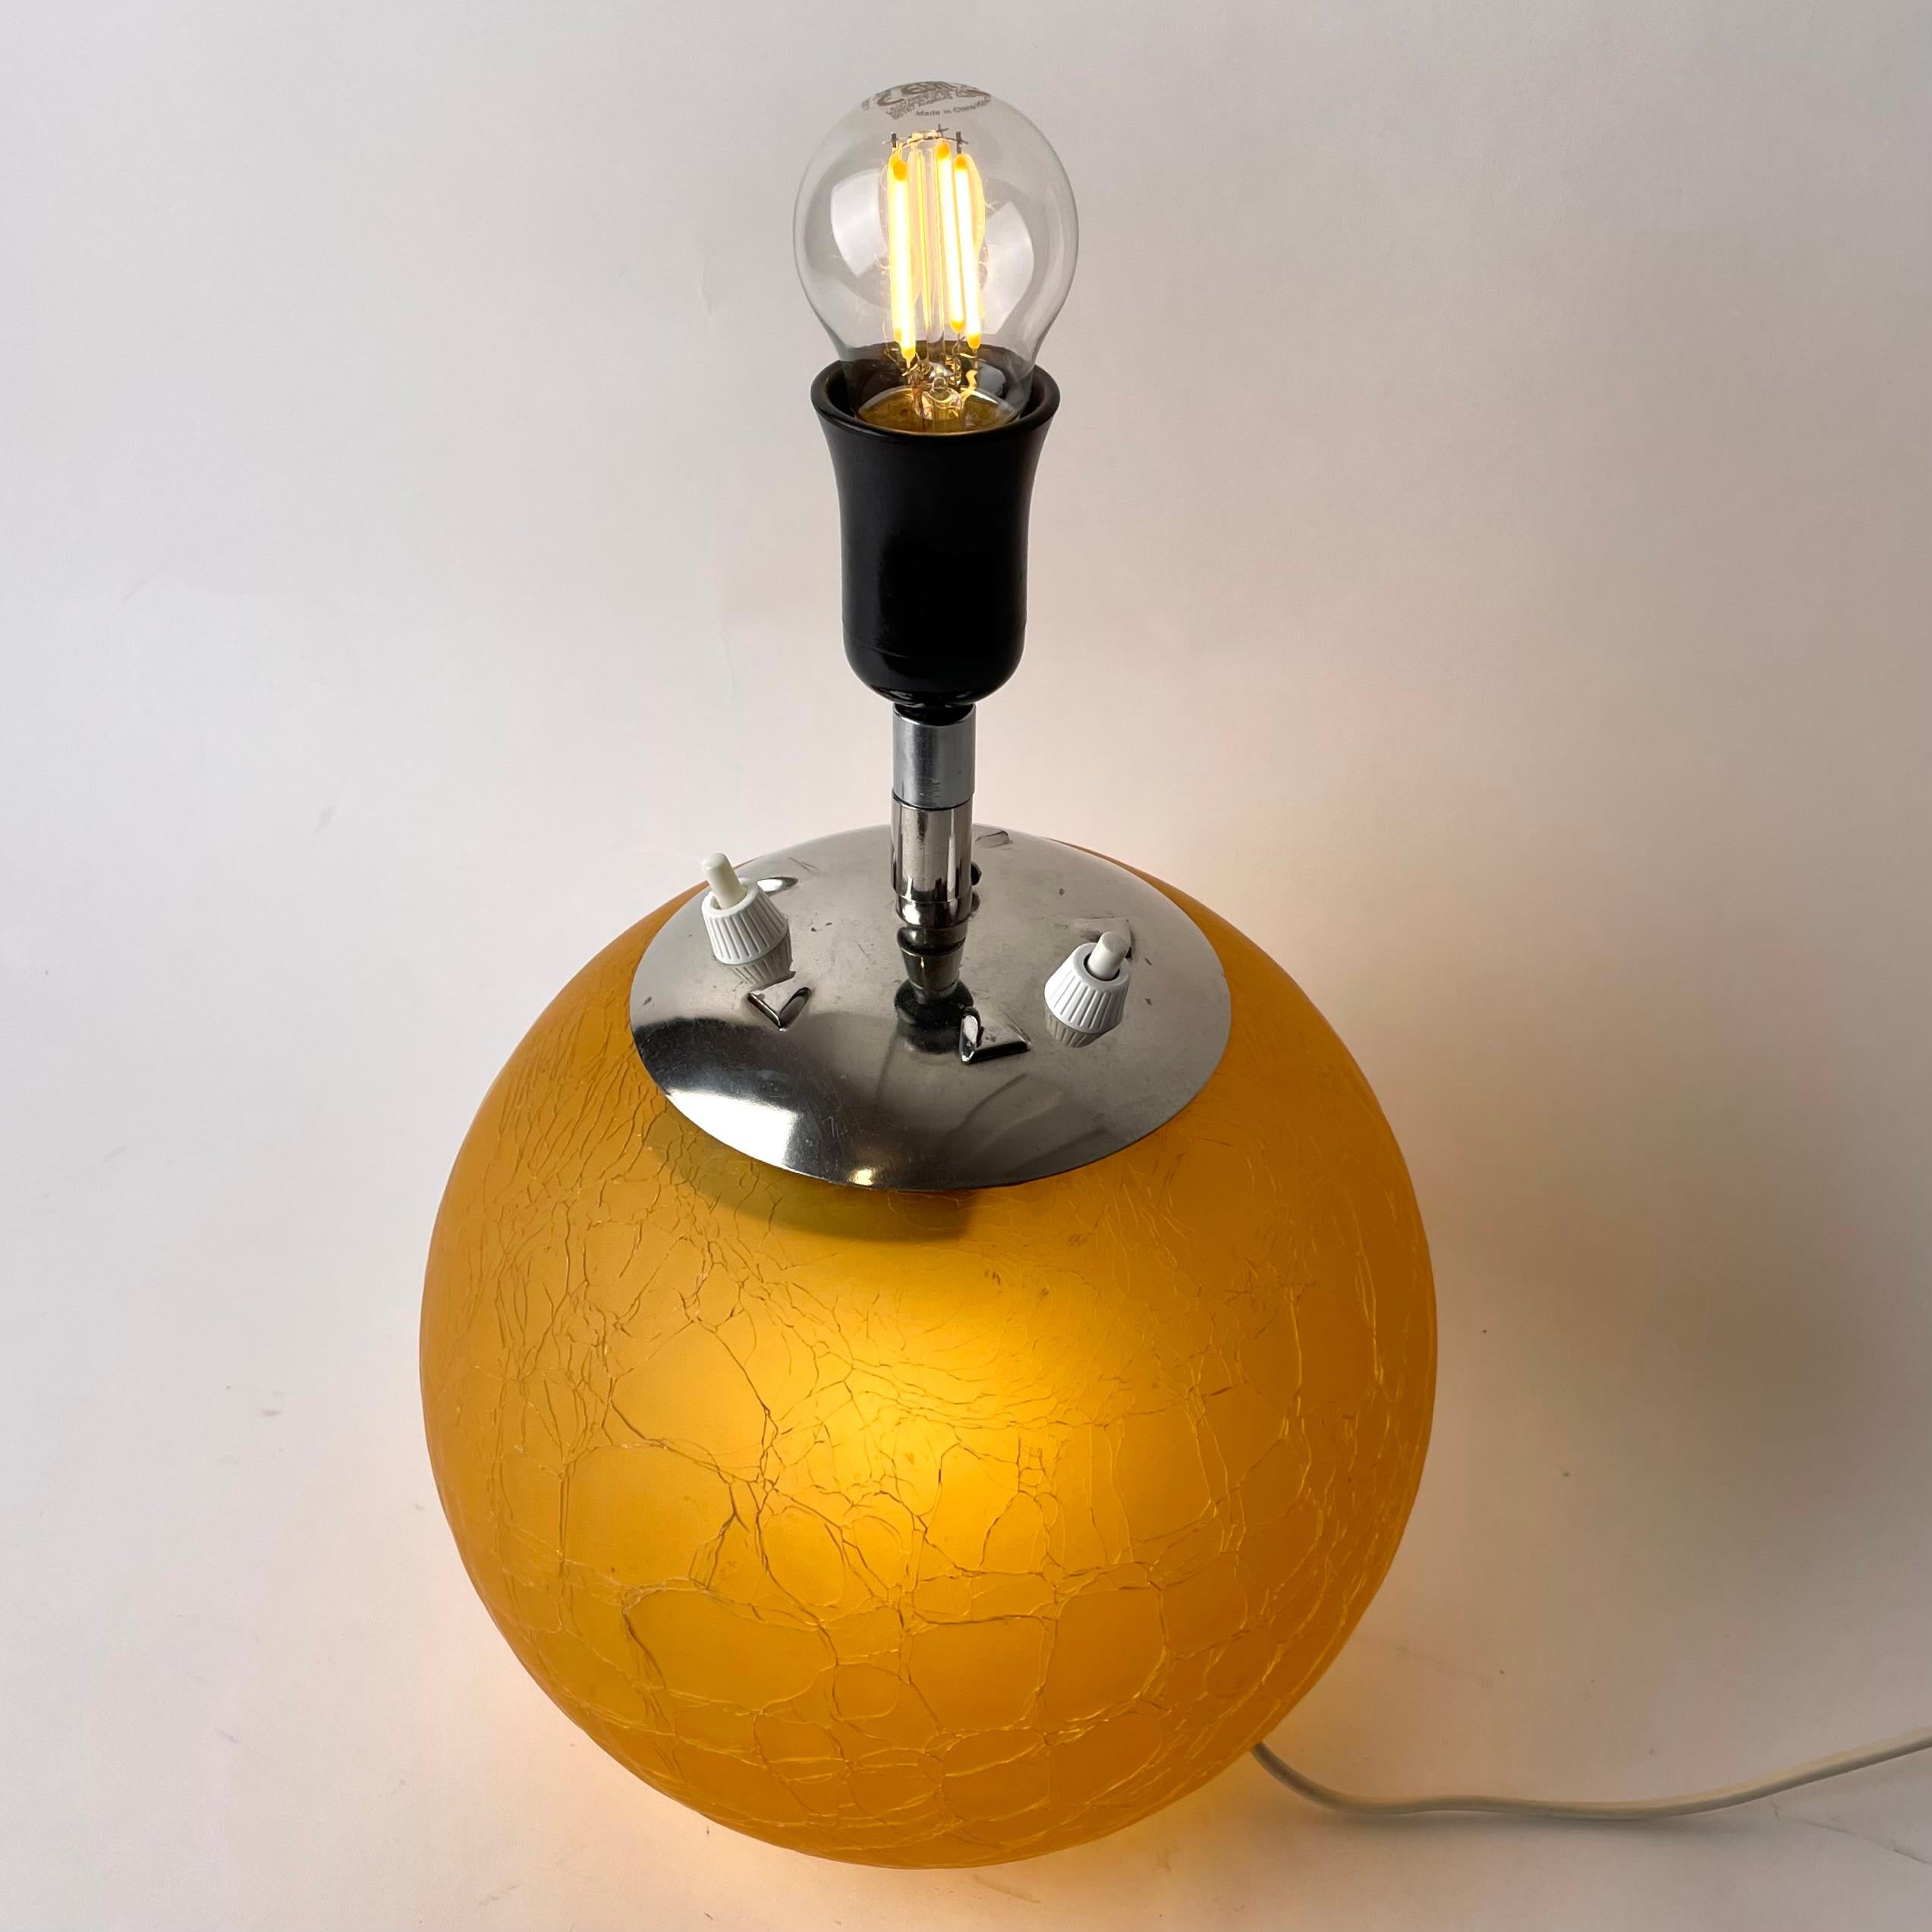 Lampe de table en verre avec un double éclairage élégant, une lampe dans la douille visible et une autre lampe à l'intérieur de la boule de verre. Modèle Art Déco réalisé dans les années 1930 dans un verre craquelé dit 